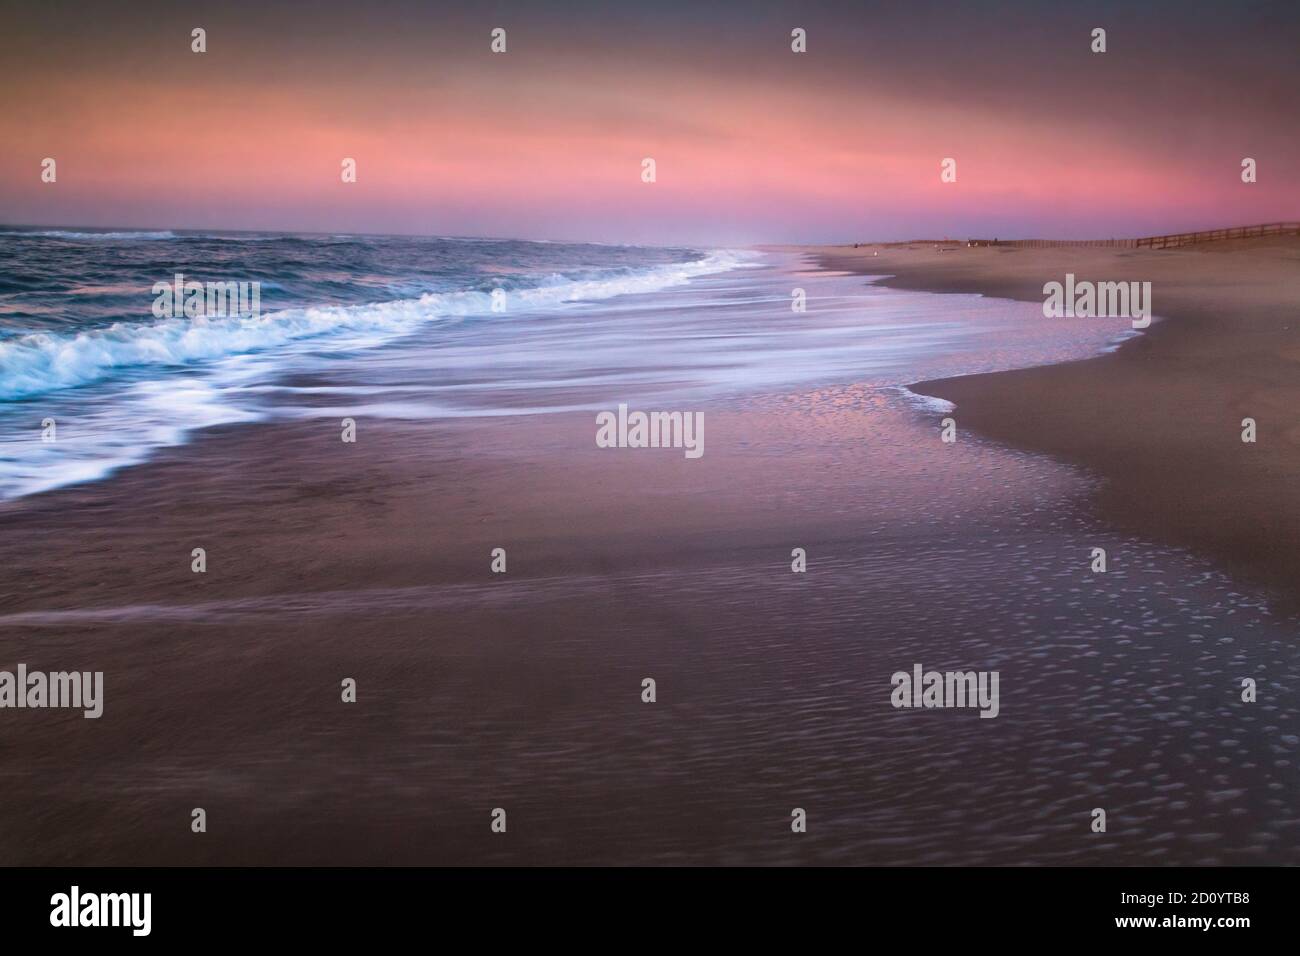 Immagini di viaggio e paesaggio della spiaggia sabbiosa di Assateague National Seashore nel Maryland, Stati Uniti. Foto Stock